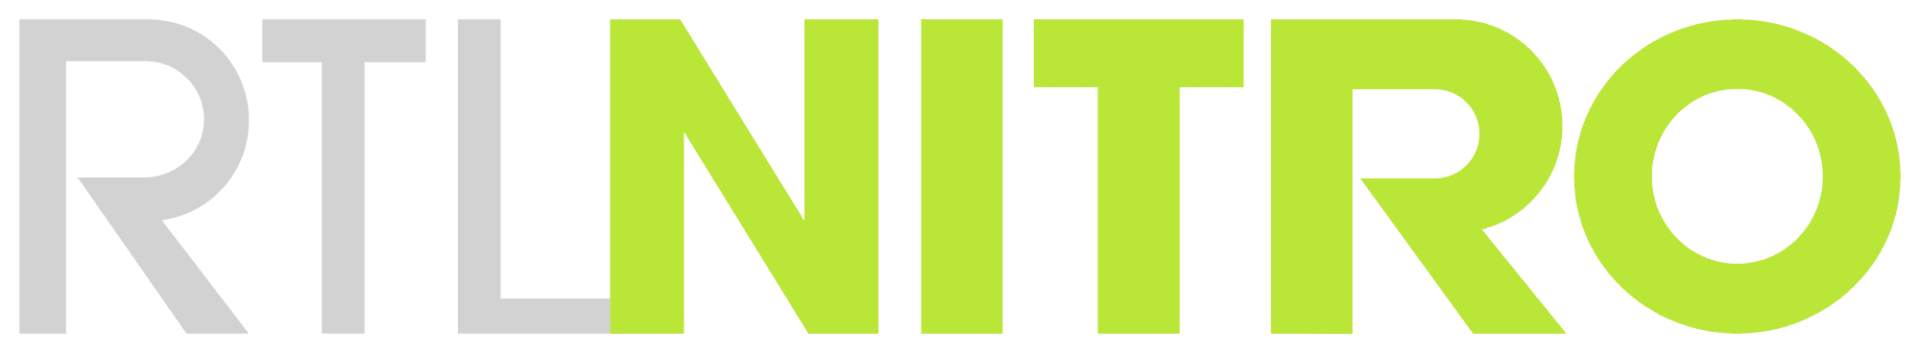 RTL Nitro